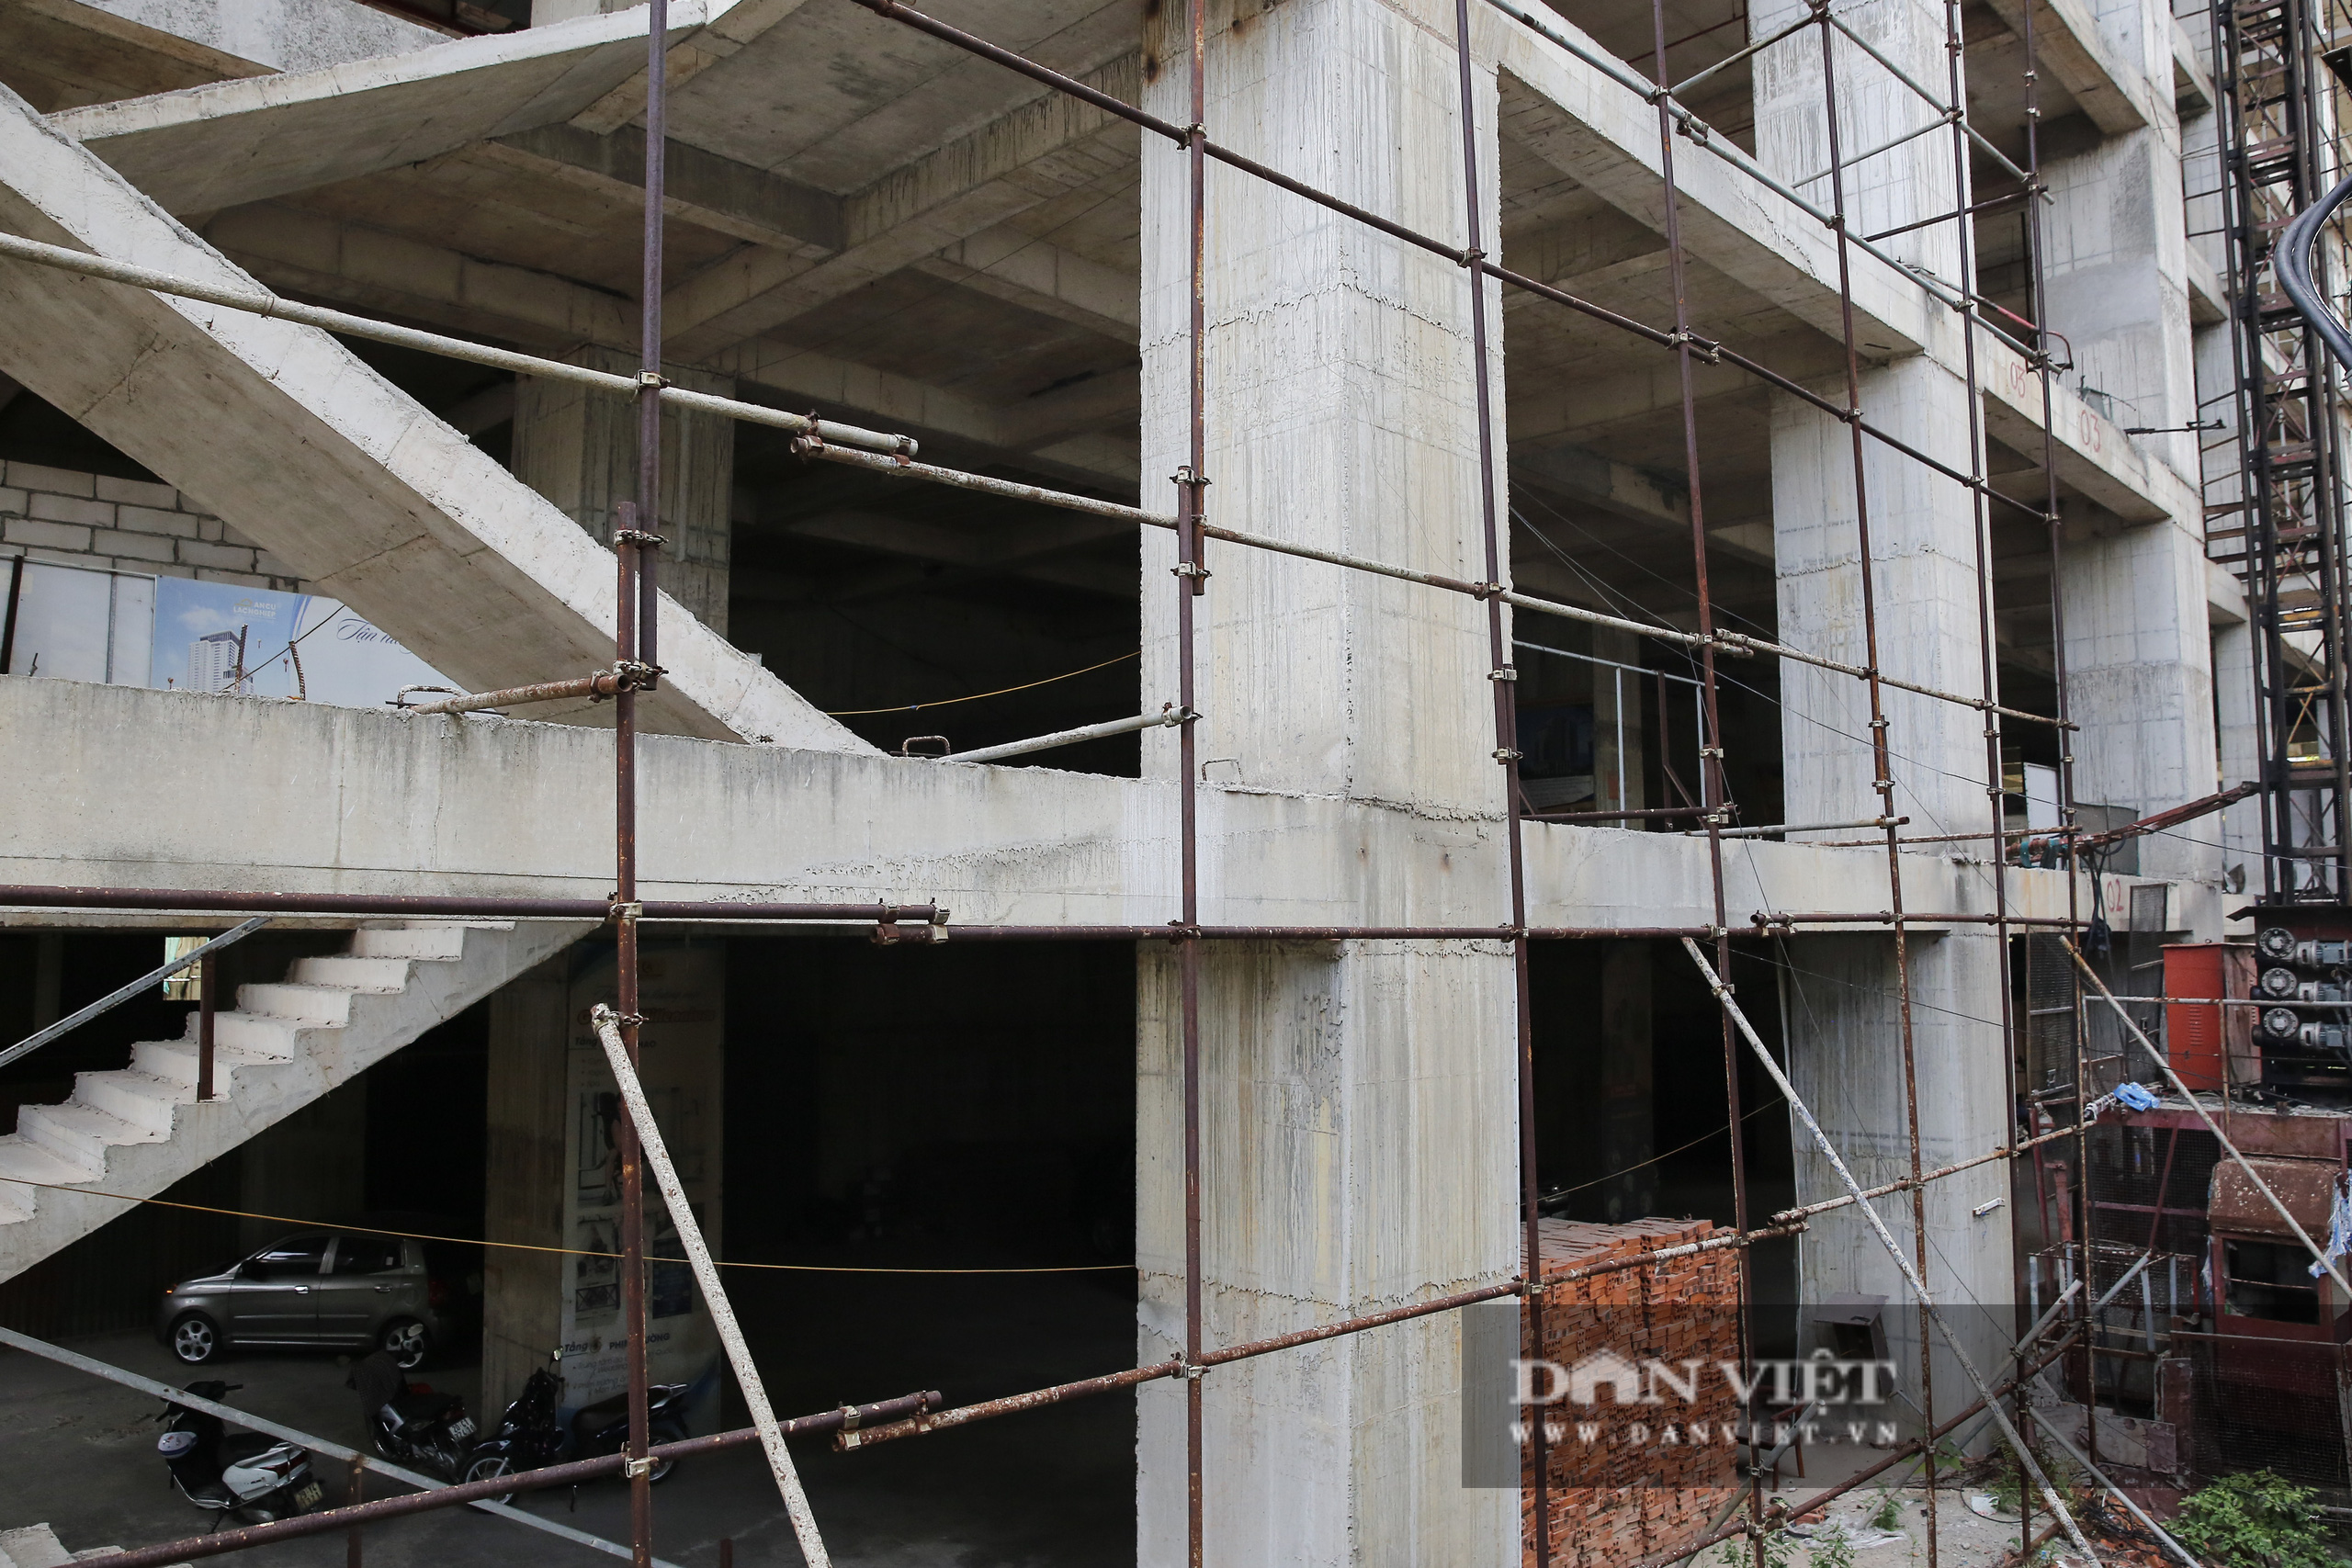 Cận cảnh dự án chung cư Hattoco gần 12 năm chưa xây xong tại Hà Nội - Ảnh 9.